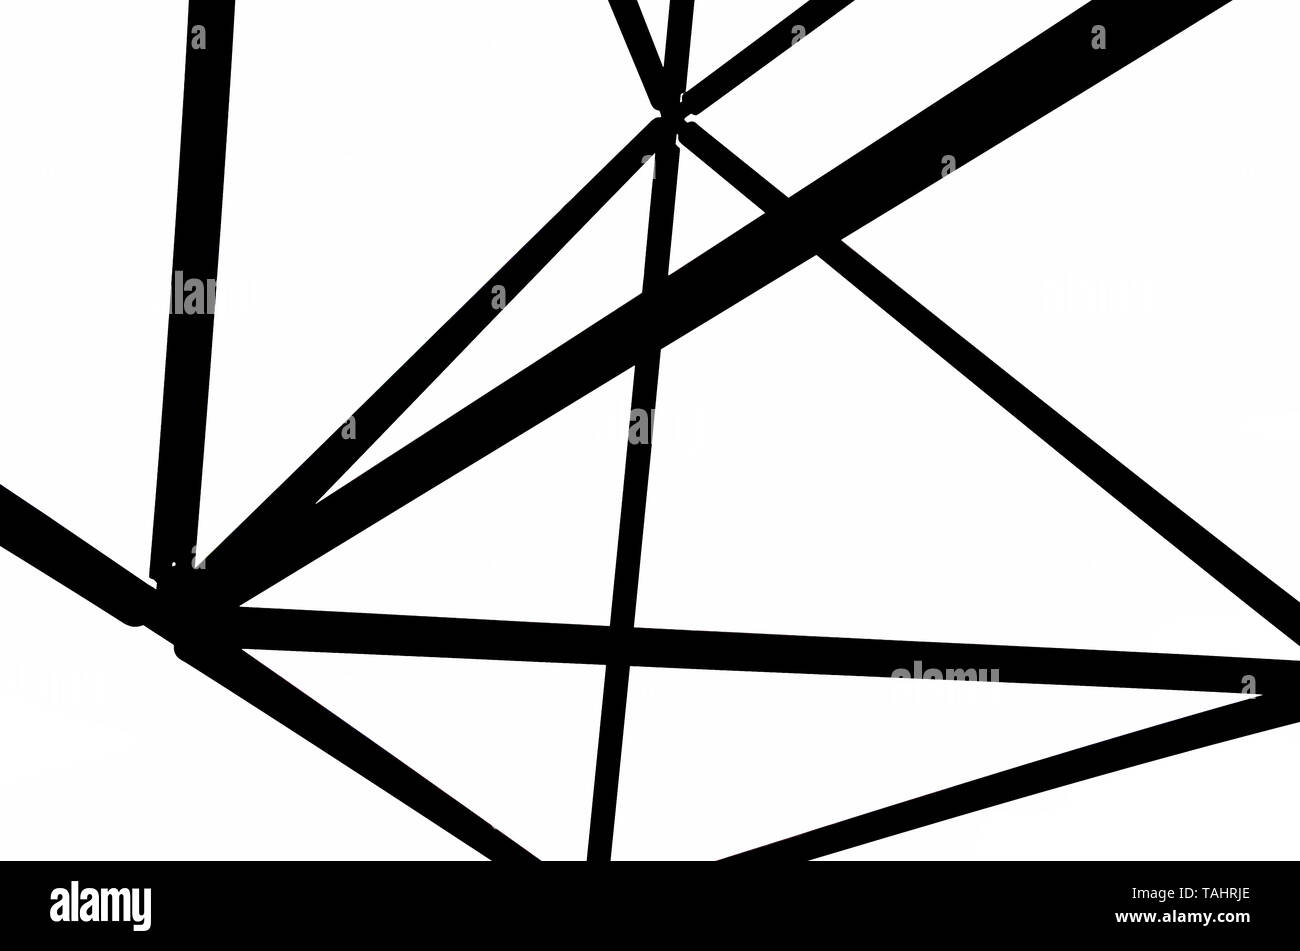 Schwarz-weiß Bild von der Stahlkonstruktion der Tetraeder in Bottrop, Deutschland. Die Grundlagen der Struktur sind durch Dreiecke gebildet. Das Design erinnert an die Erstellung eines tetrix. Stockfoto